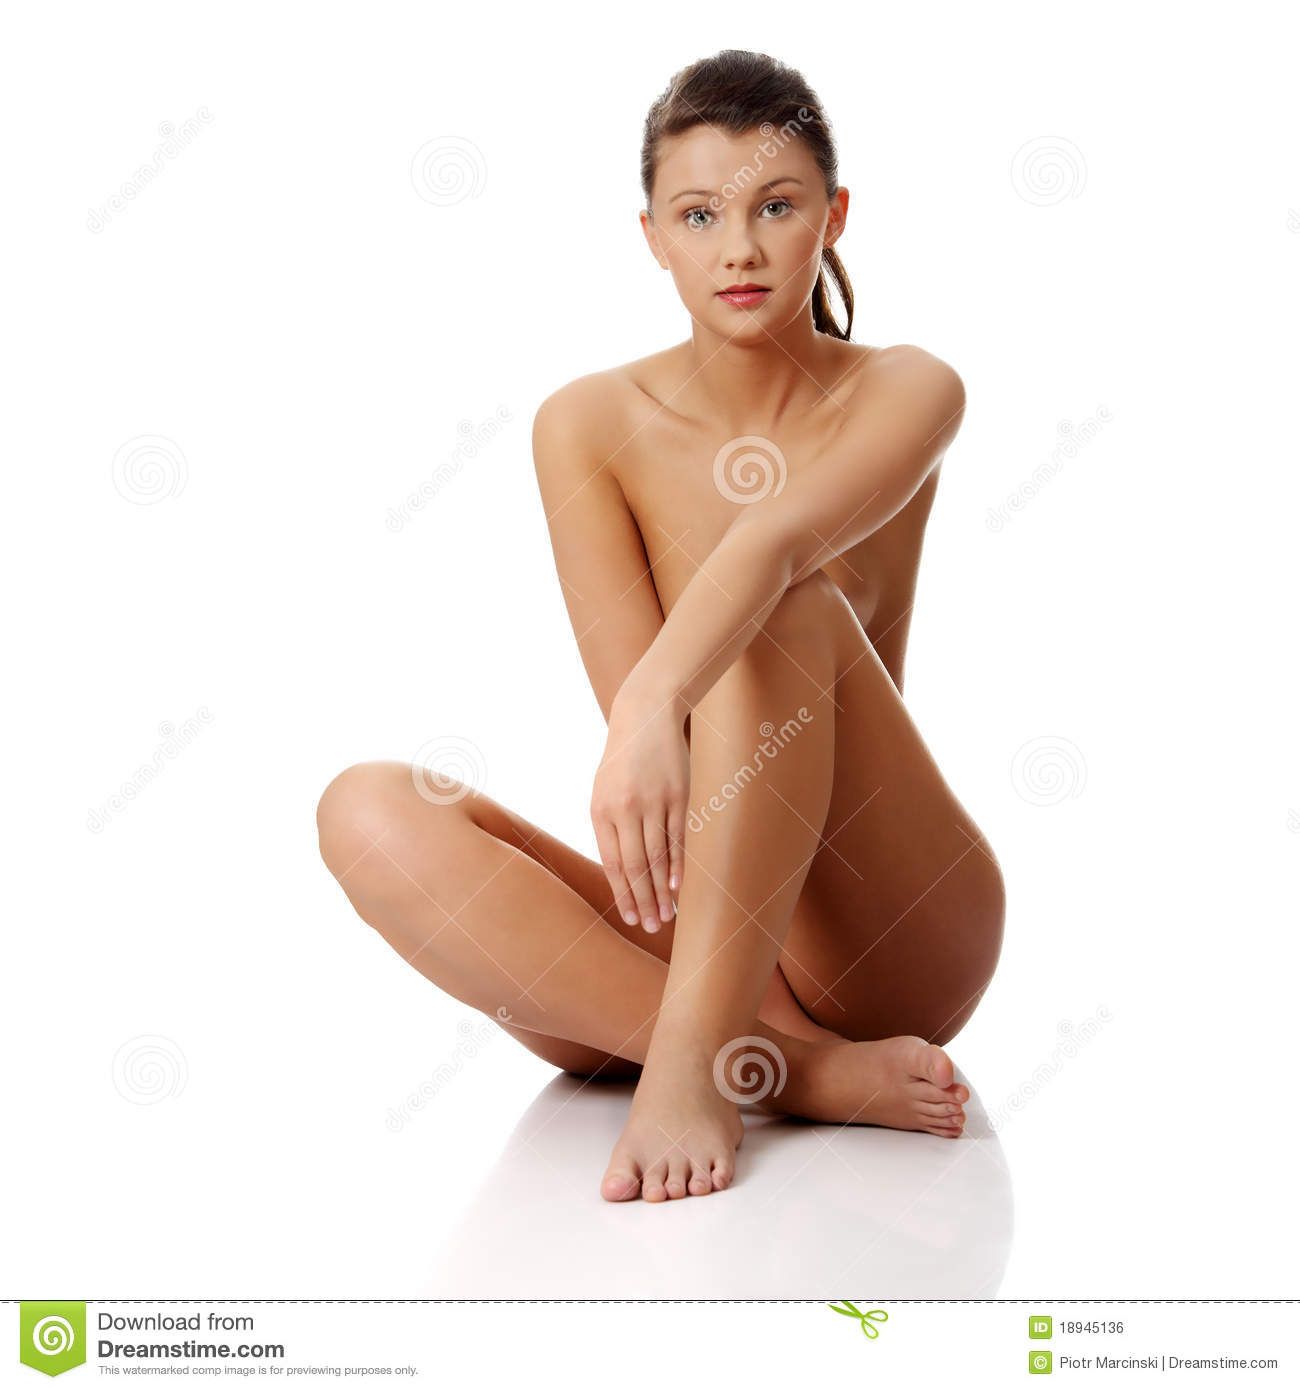 Beautiful free naked pic woman